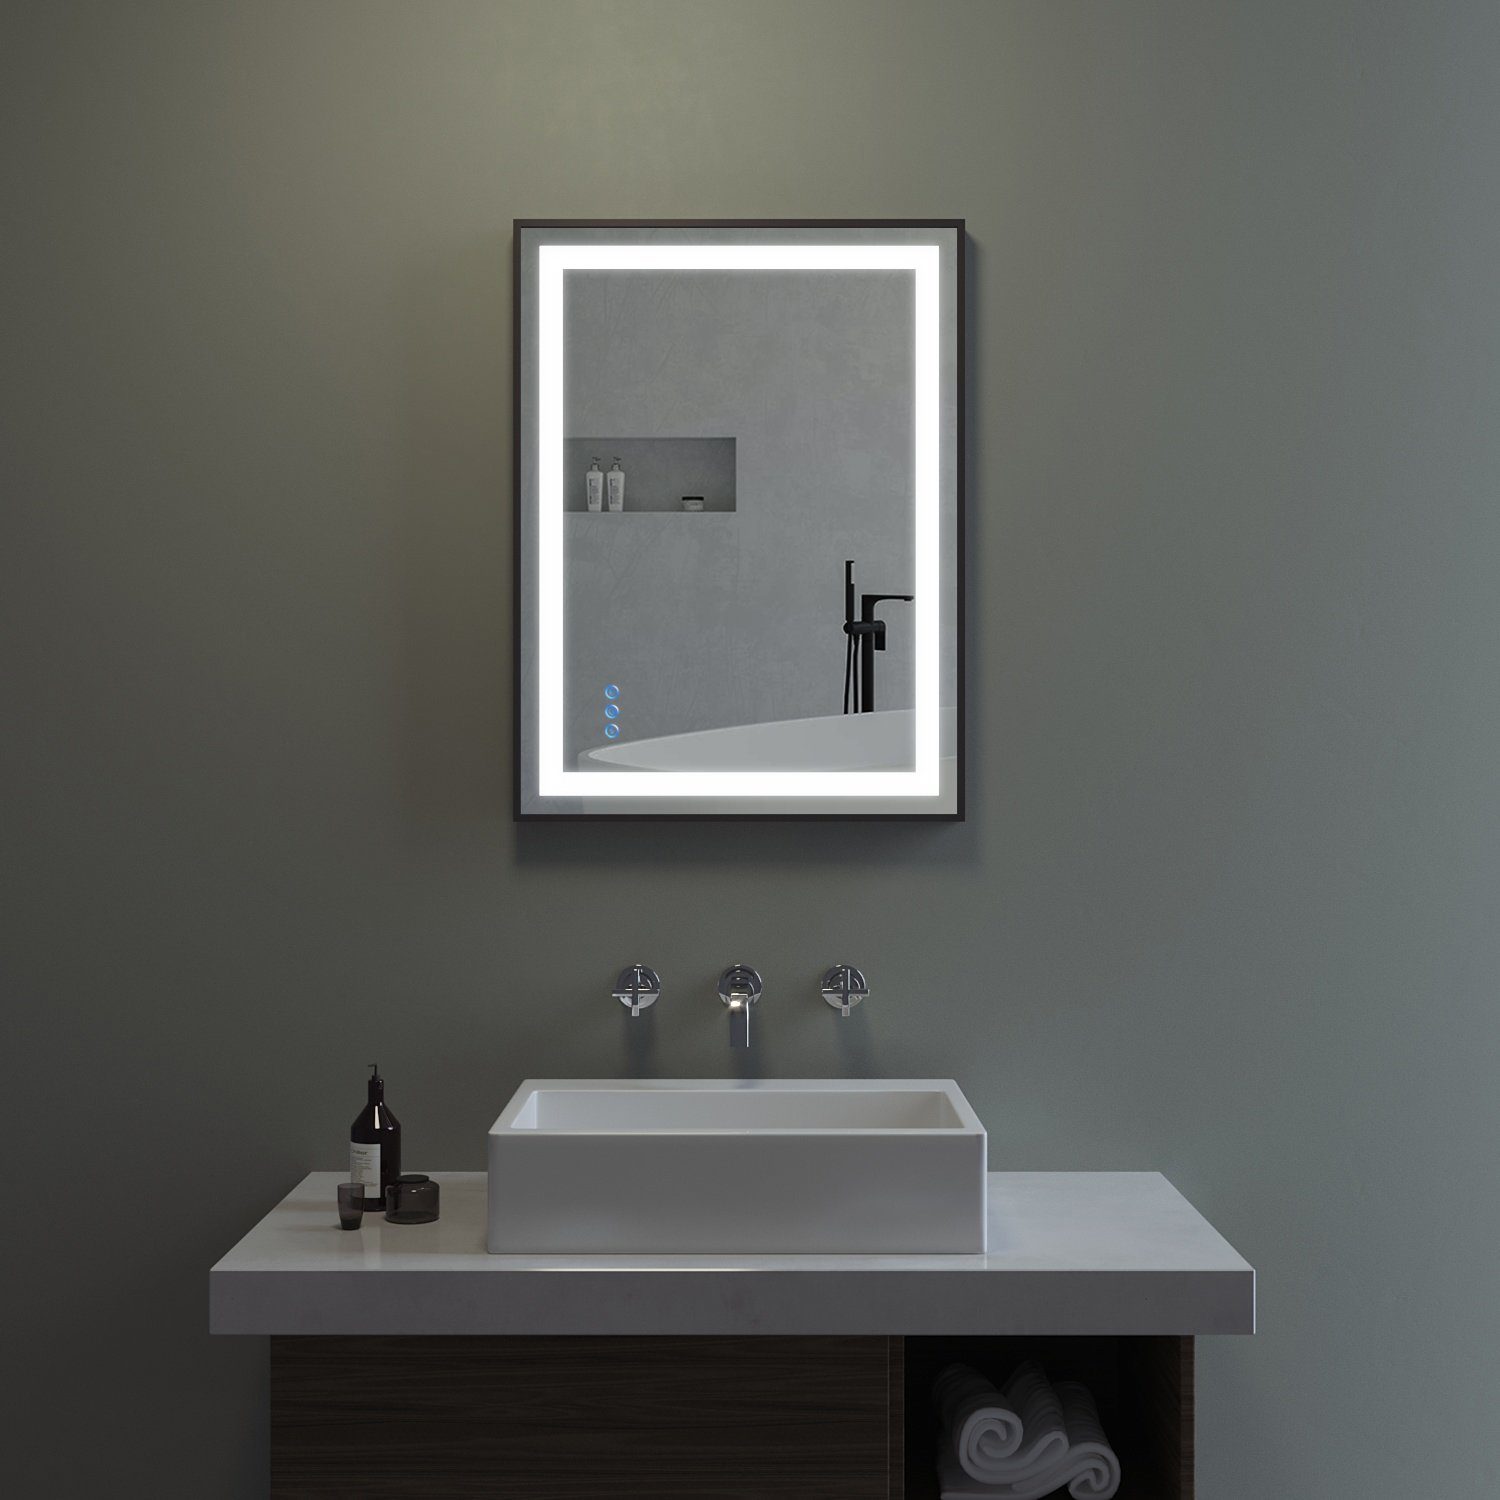 Energiesparend Licht mit Badezimmerspiegel (80x60cm Badspiegel Schalter Dimmbar 100x70cm), Warmweiß Beleuchtung AQUABATOS Kaltweiß LED-Lichtspiegel Touch mit Antibeschlag LED